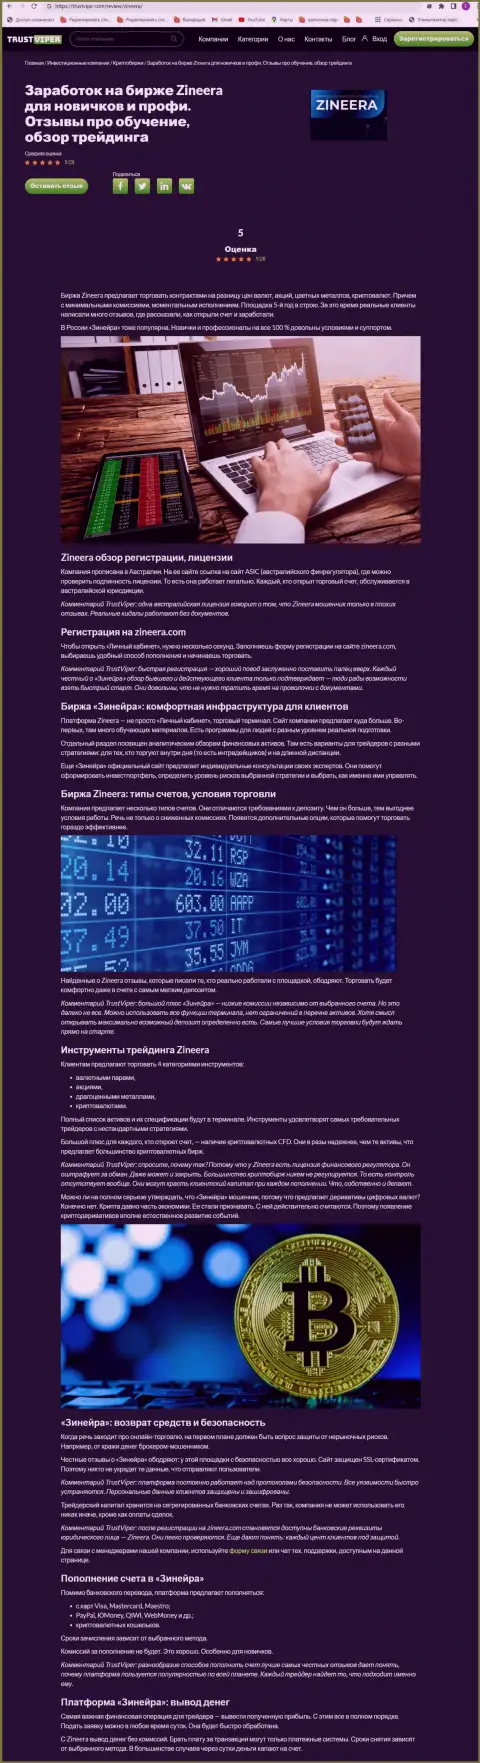 Разбор деятельности криптовалютной брокерской организации Зинейра Ком на информационном сервисе Траствайпер Ком